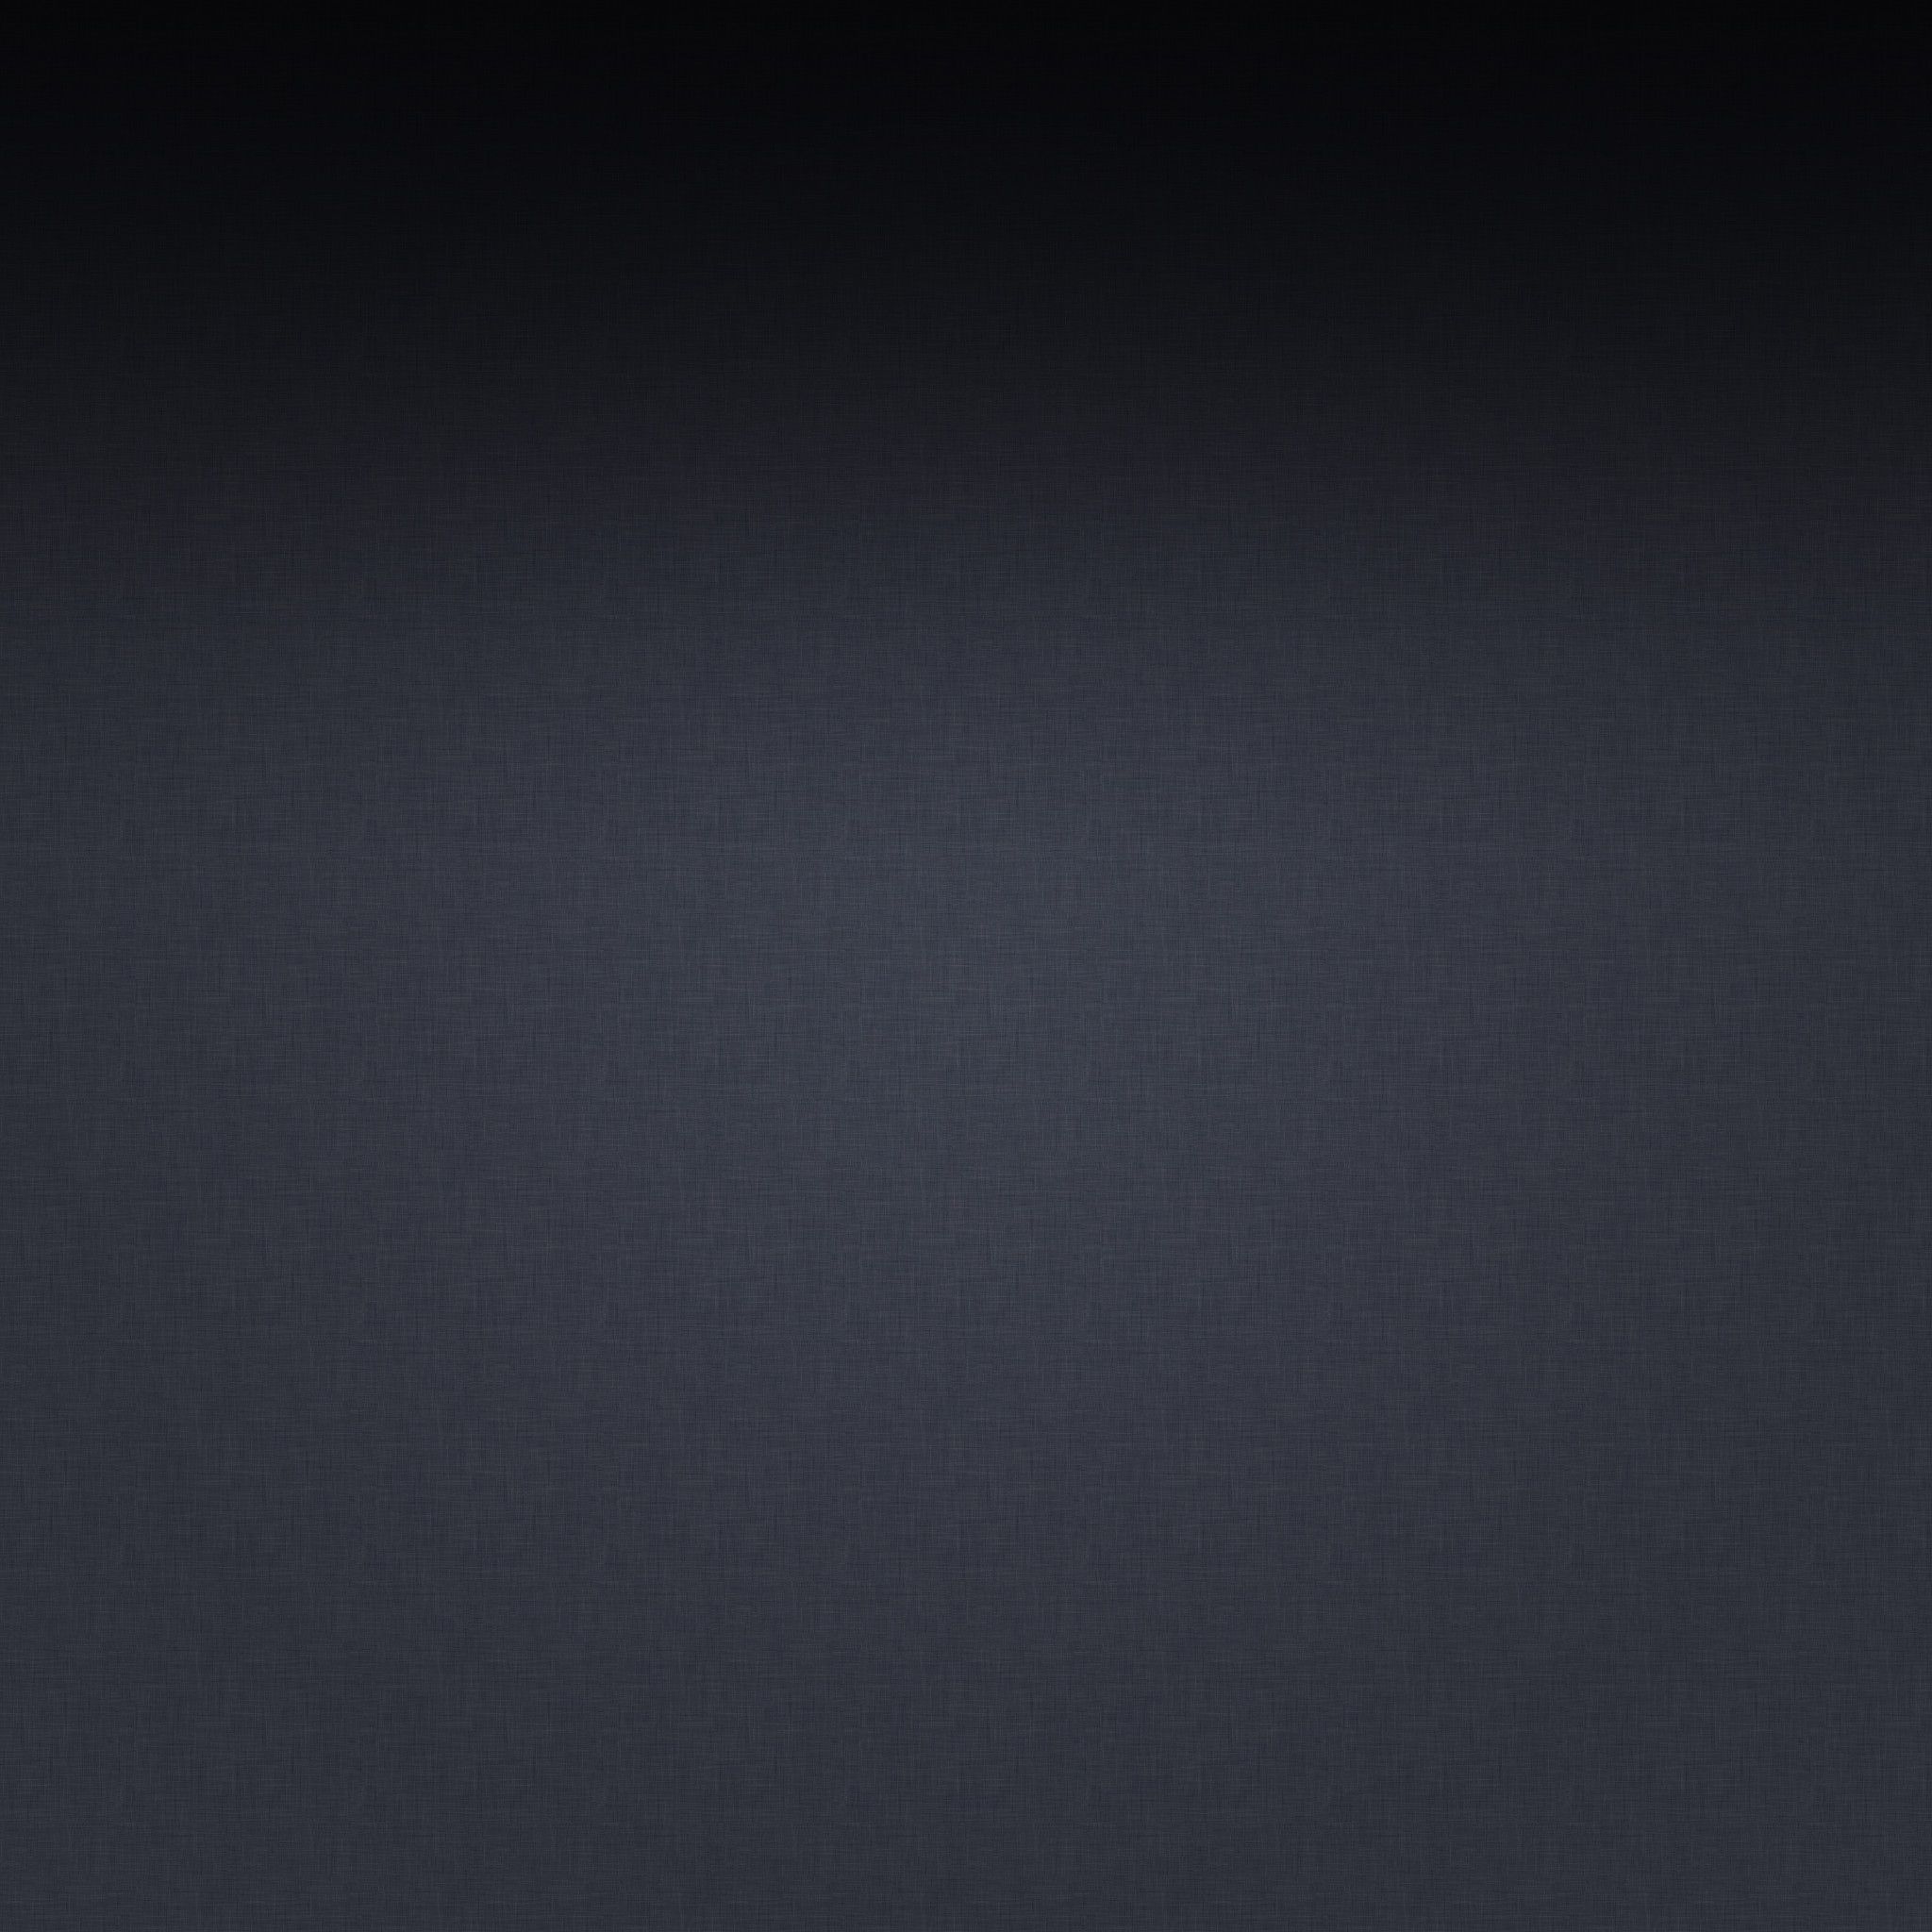 Solid Dark Grey, iPhone, Desktop HD Background / Wallpaper (1080p, 4k) (2048x2048) (2021)